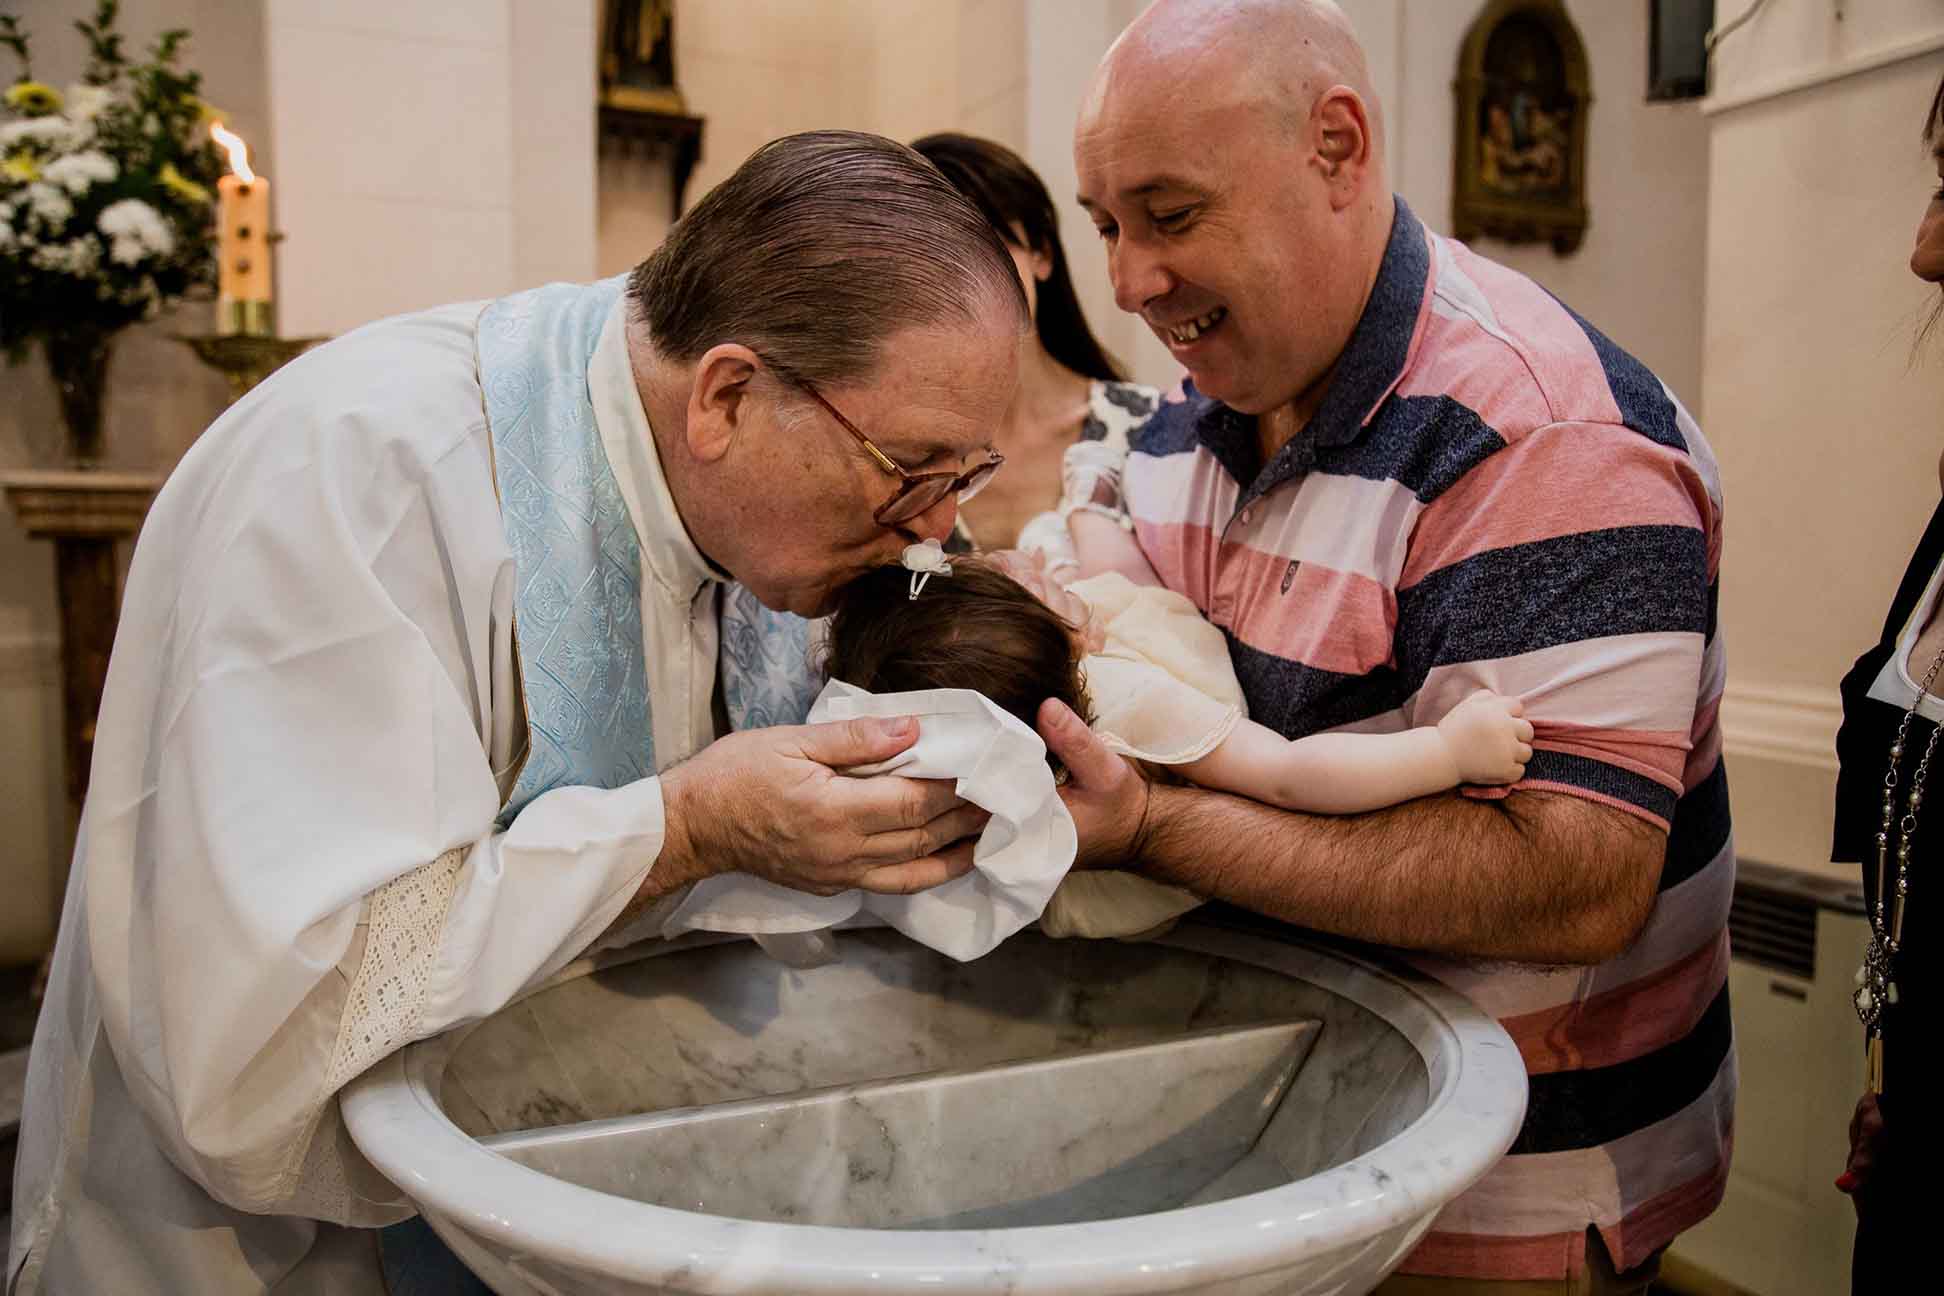 Fotos del bautismo de Guada y el cumple de cuarenta de Vicky en Rosario realizadas por Bucle Fotografías Flor Bosio y Caro Clerici